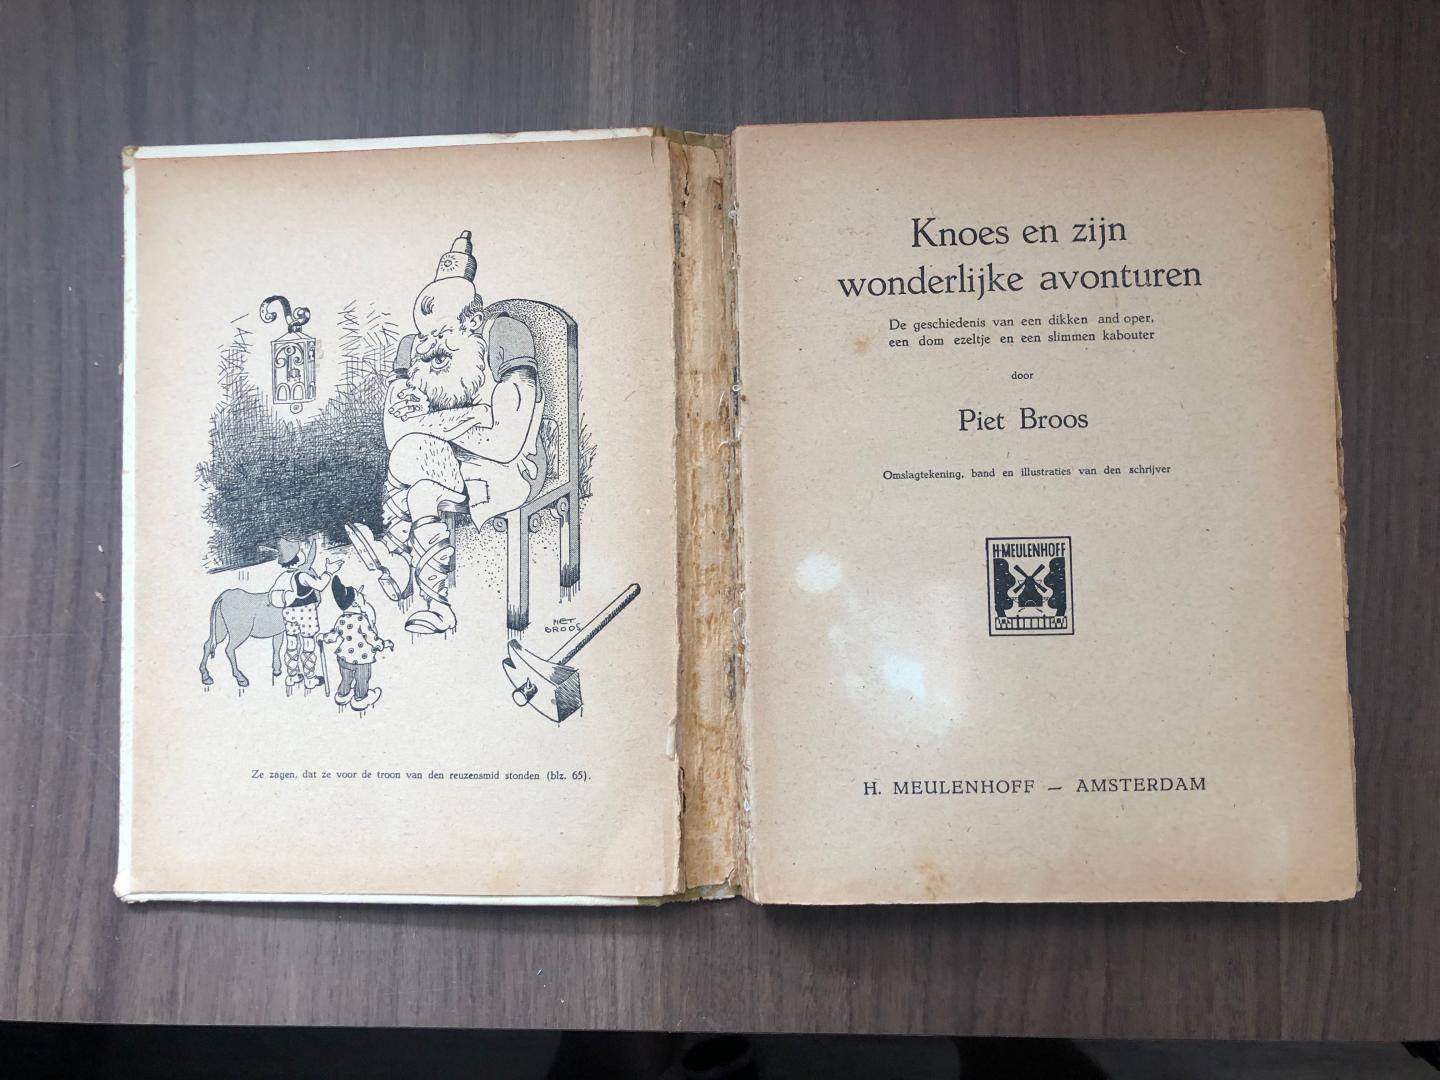 Piet Broos - KNOES - Knoes en zijn wonderlijke avonturen - de geschiedenis van een dikken landloper, een dom ezeltje en een slimmen kabouter